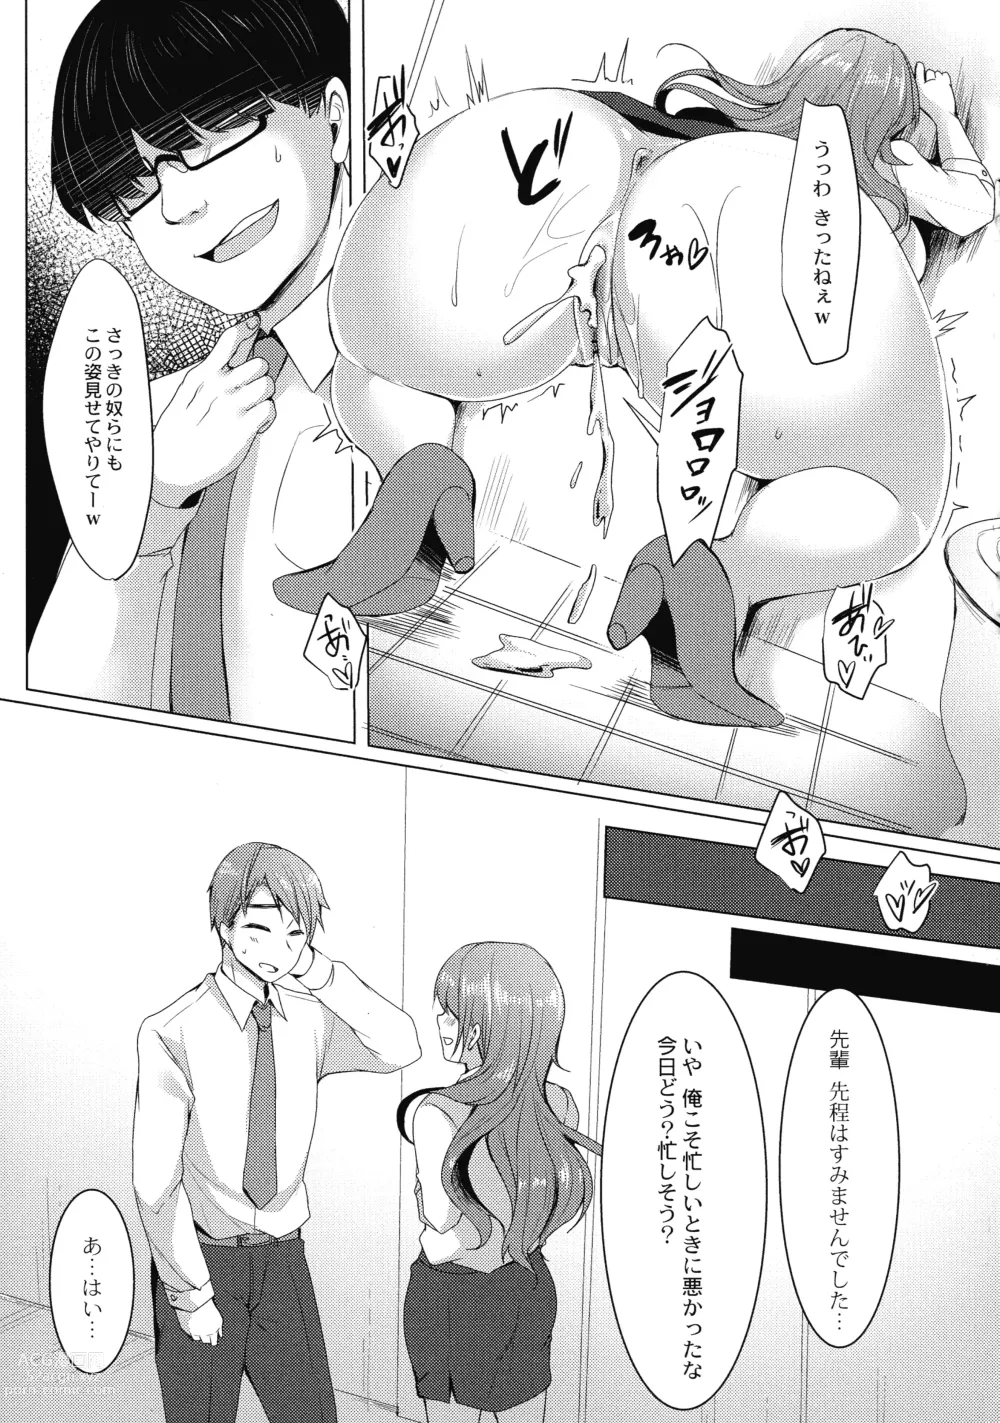 Page 193 of manga Mesuochi.